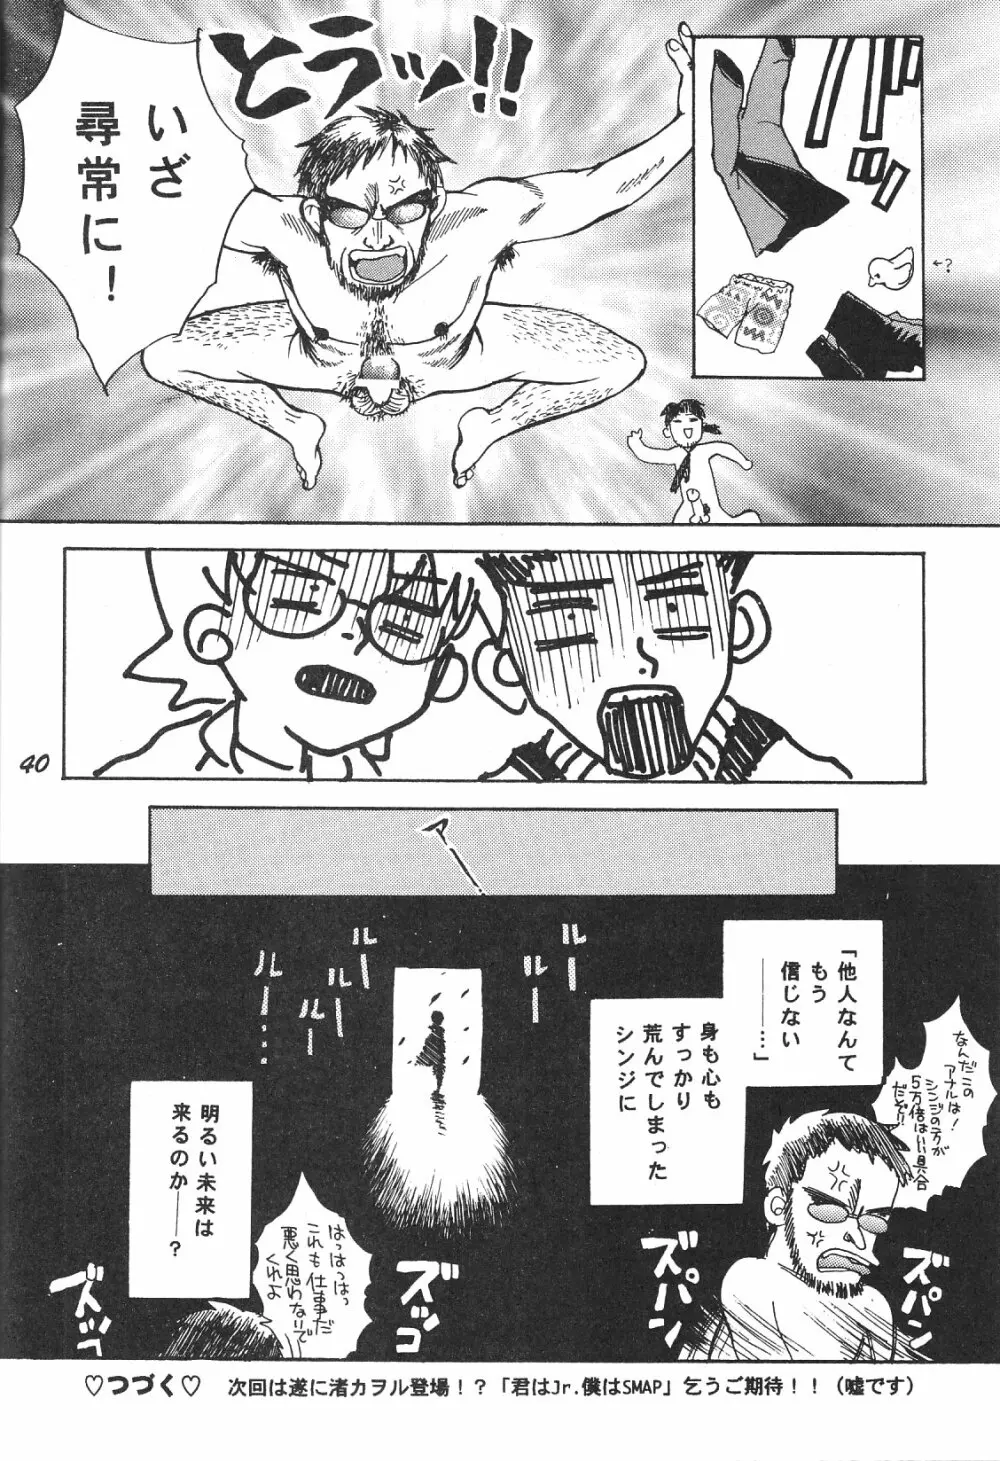 Maniac Juice 女シンジ再録集 ’96-’99 40ページ